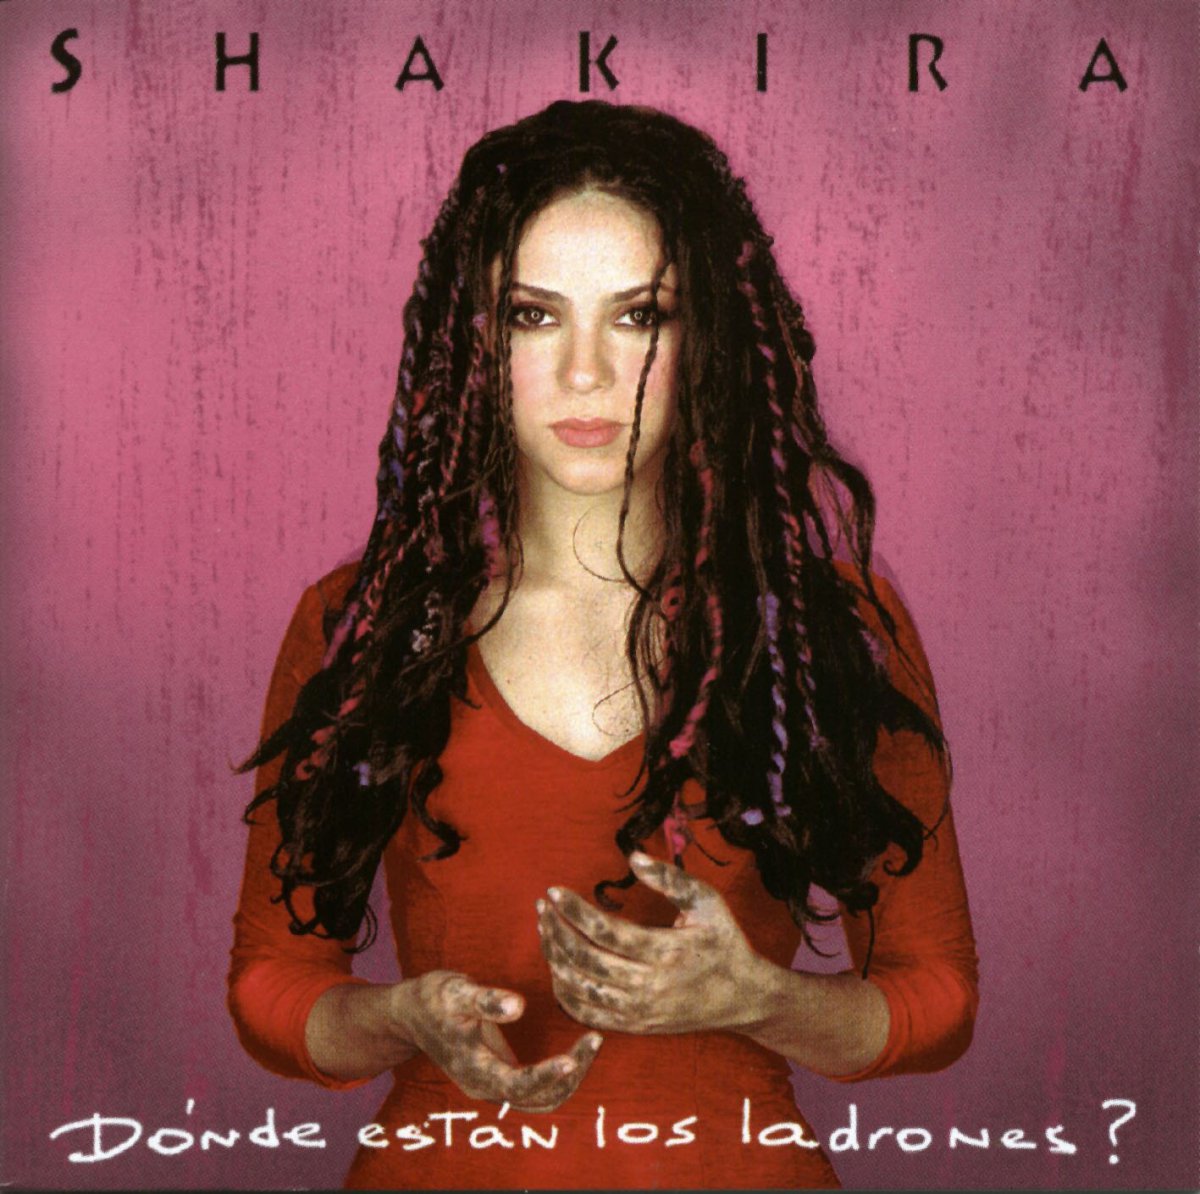 Compartir 39+ imagen portadas de discos de shakira